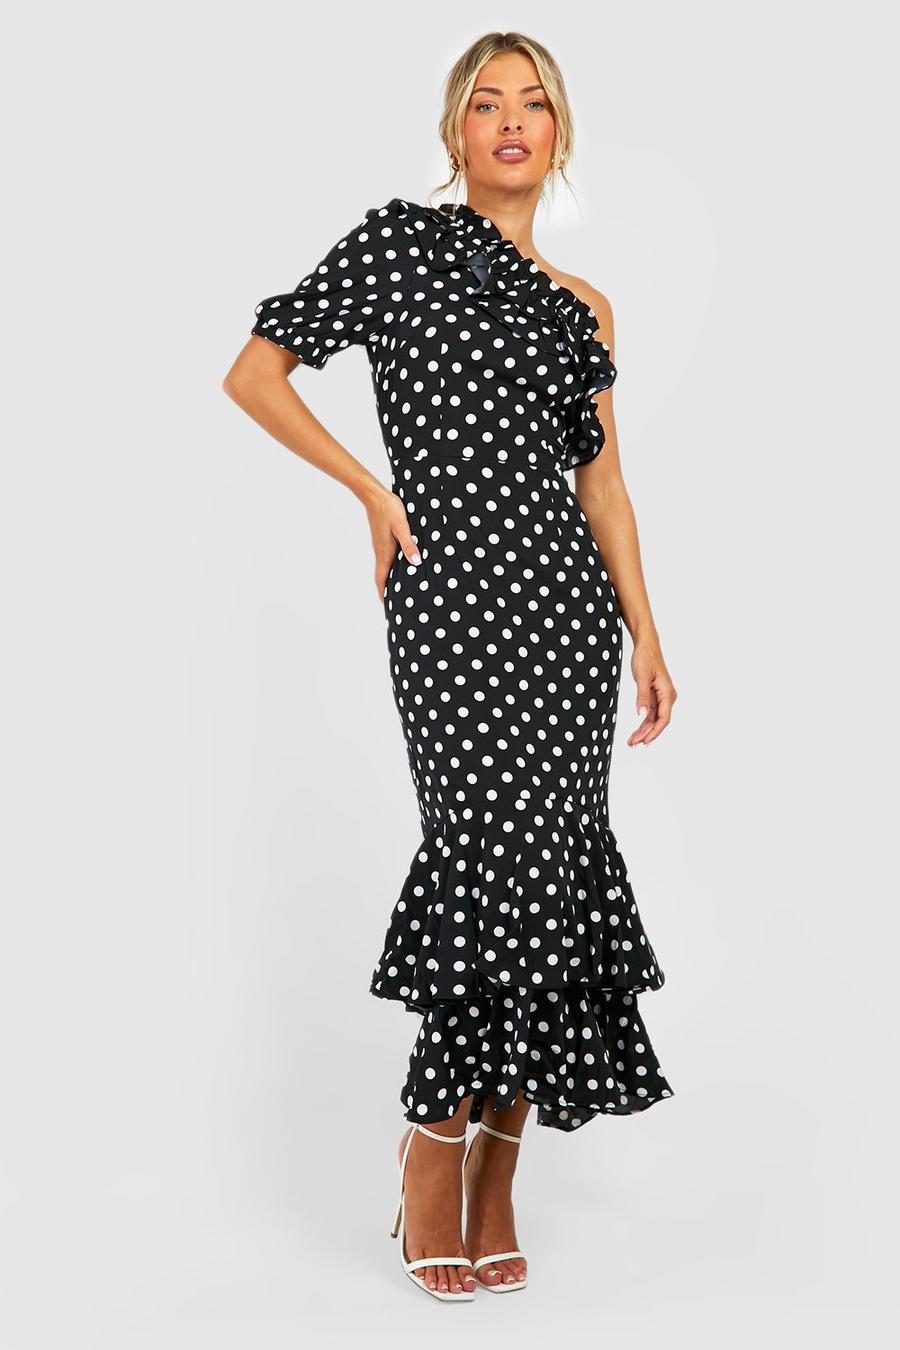 Black Polka Dot Ruffle Midaxi Dress